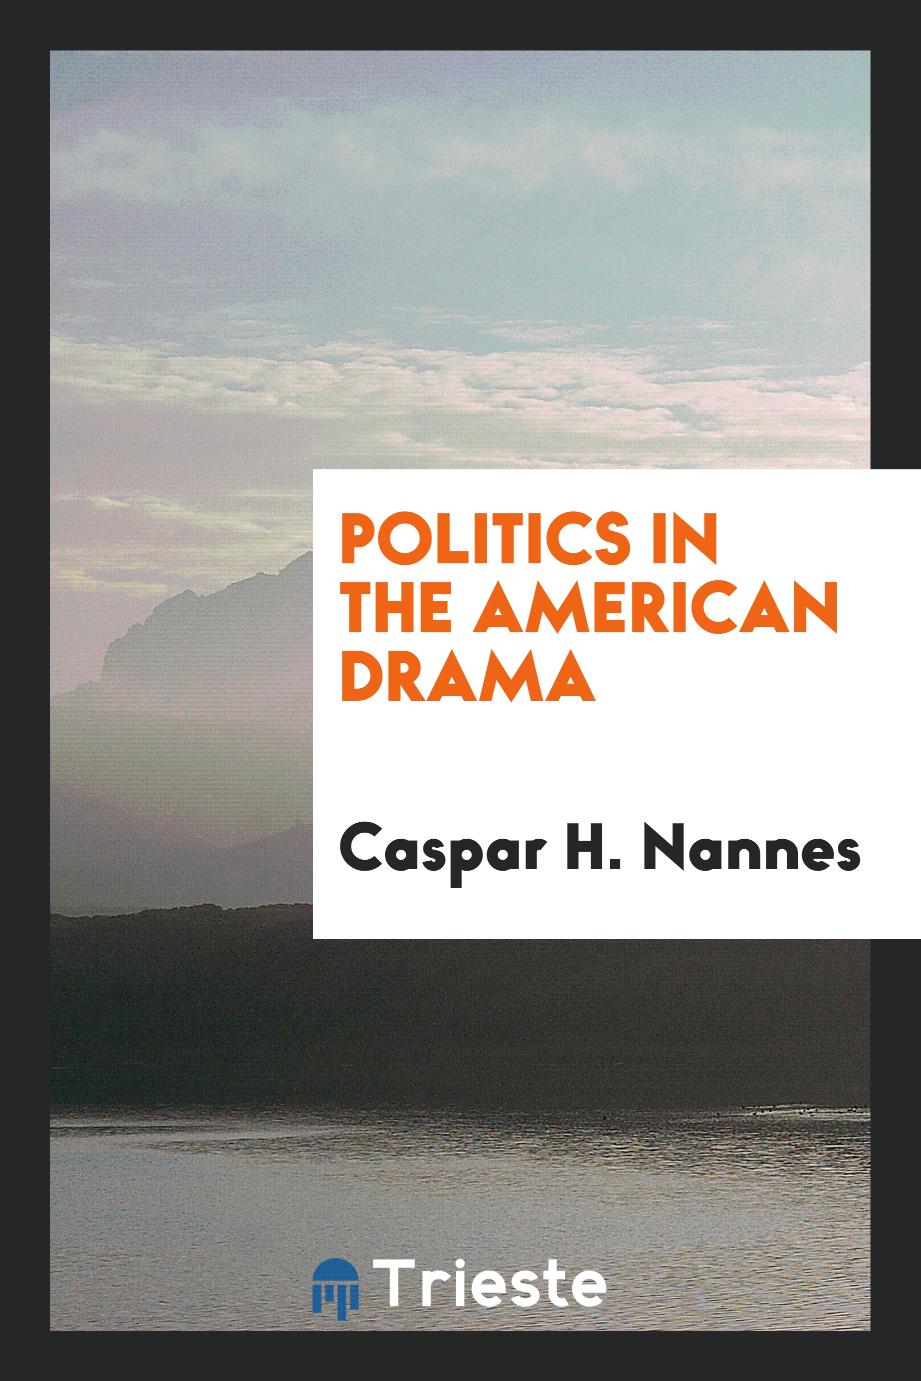 Politics in the American drama